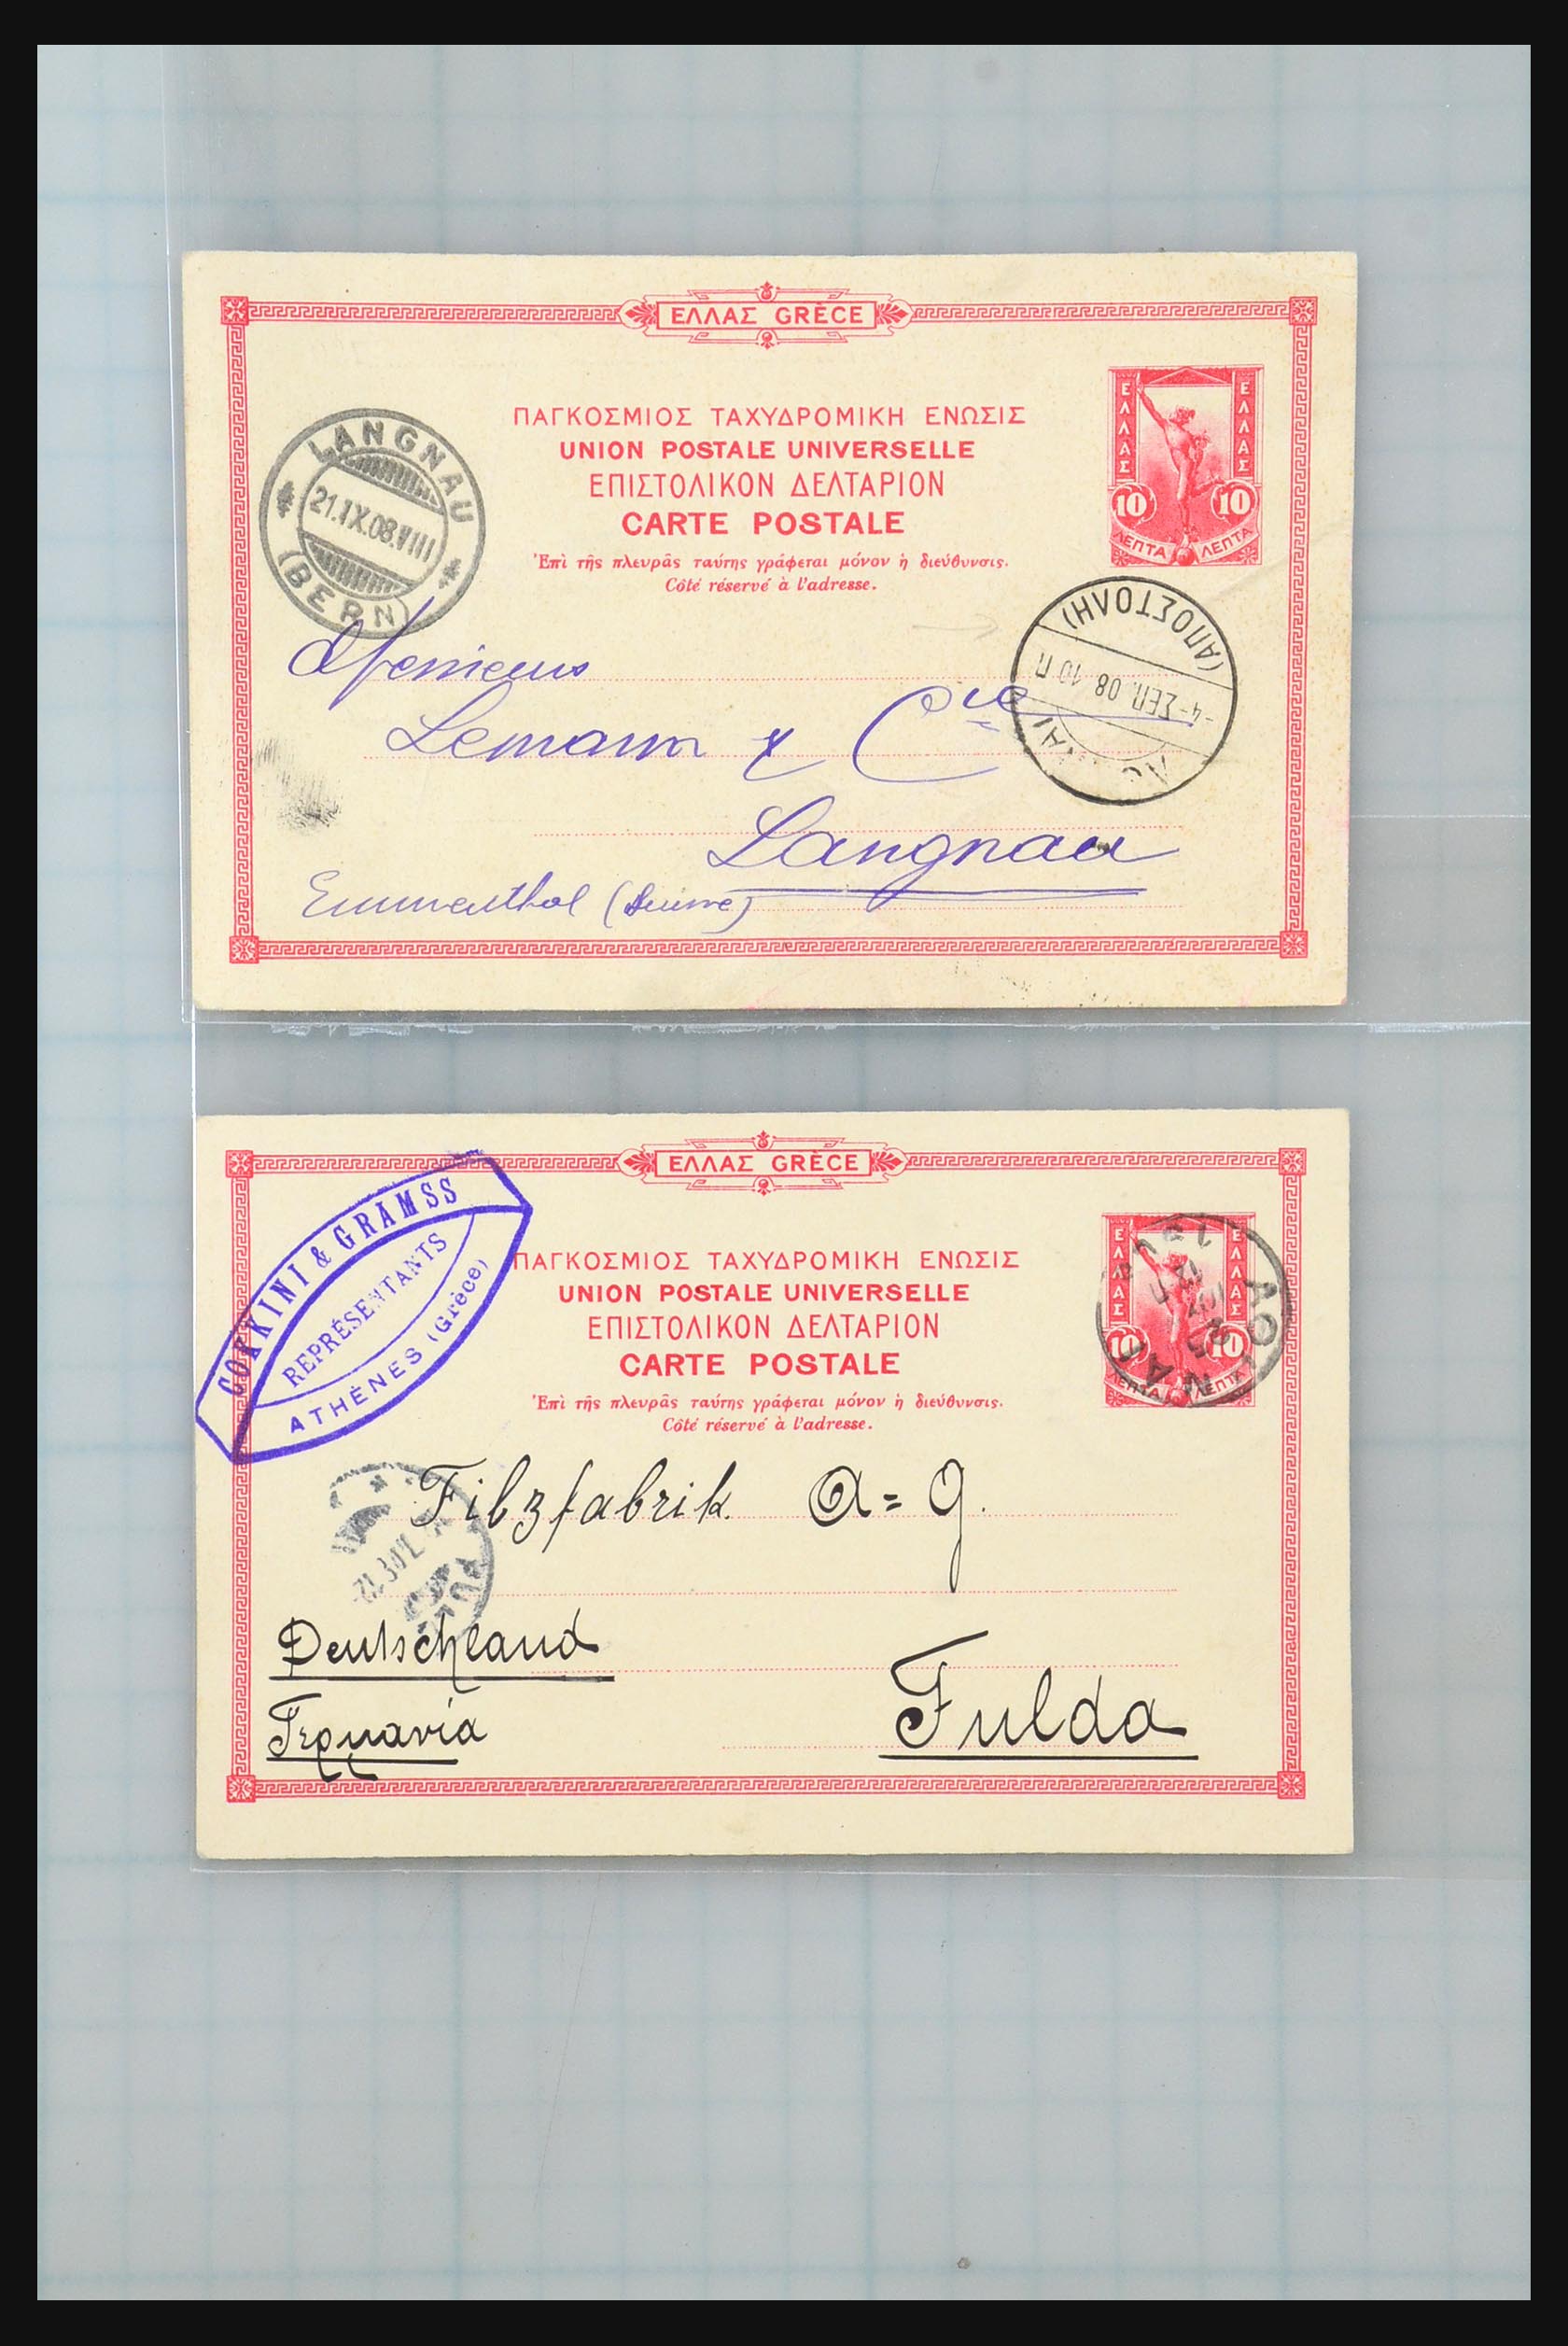 31358 026 - 31358 Portugal/Luxemburg/Griekenland brieven 1880-1960.